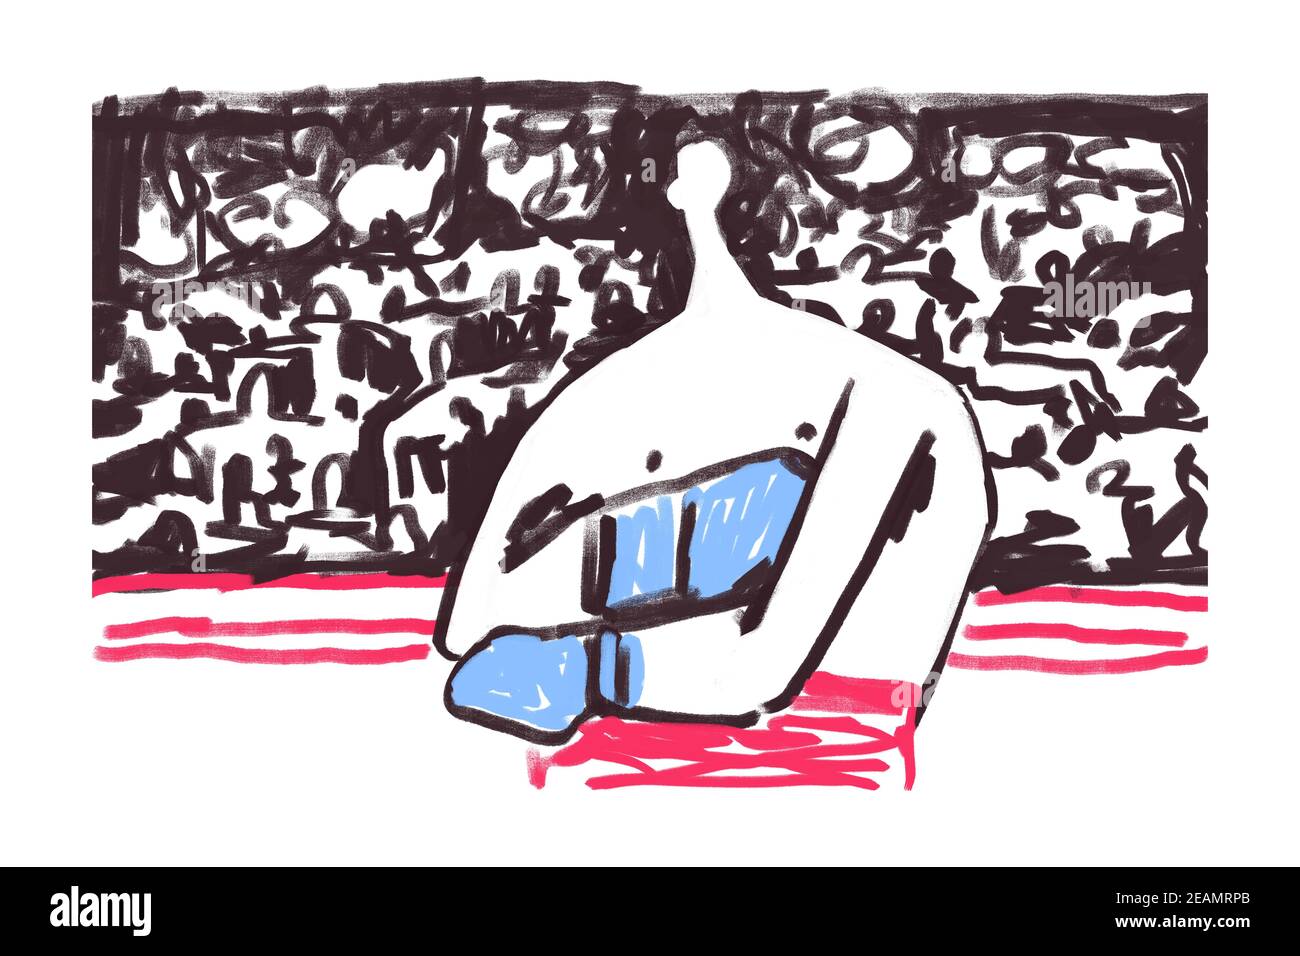 Illustrazione di Boxer nell'anello con molta gente intorno lui. Illustrazione della pittura ruvida e Graffiti moderna. Vernice con linea nera in grassetto con rosso e blu su bianco. Per Stampa e Poster Foto Stock